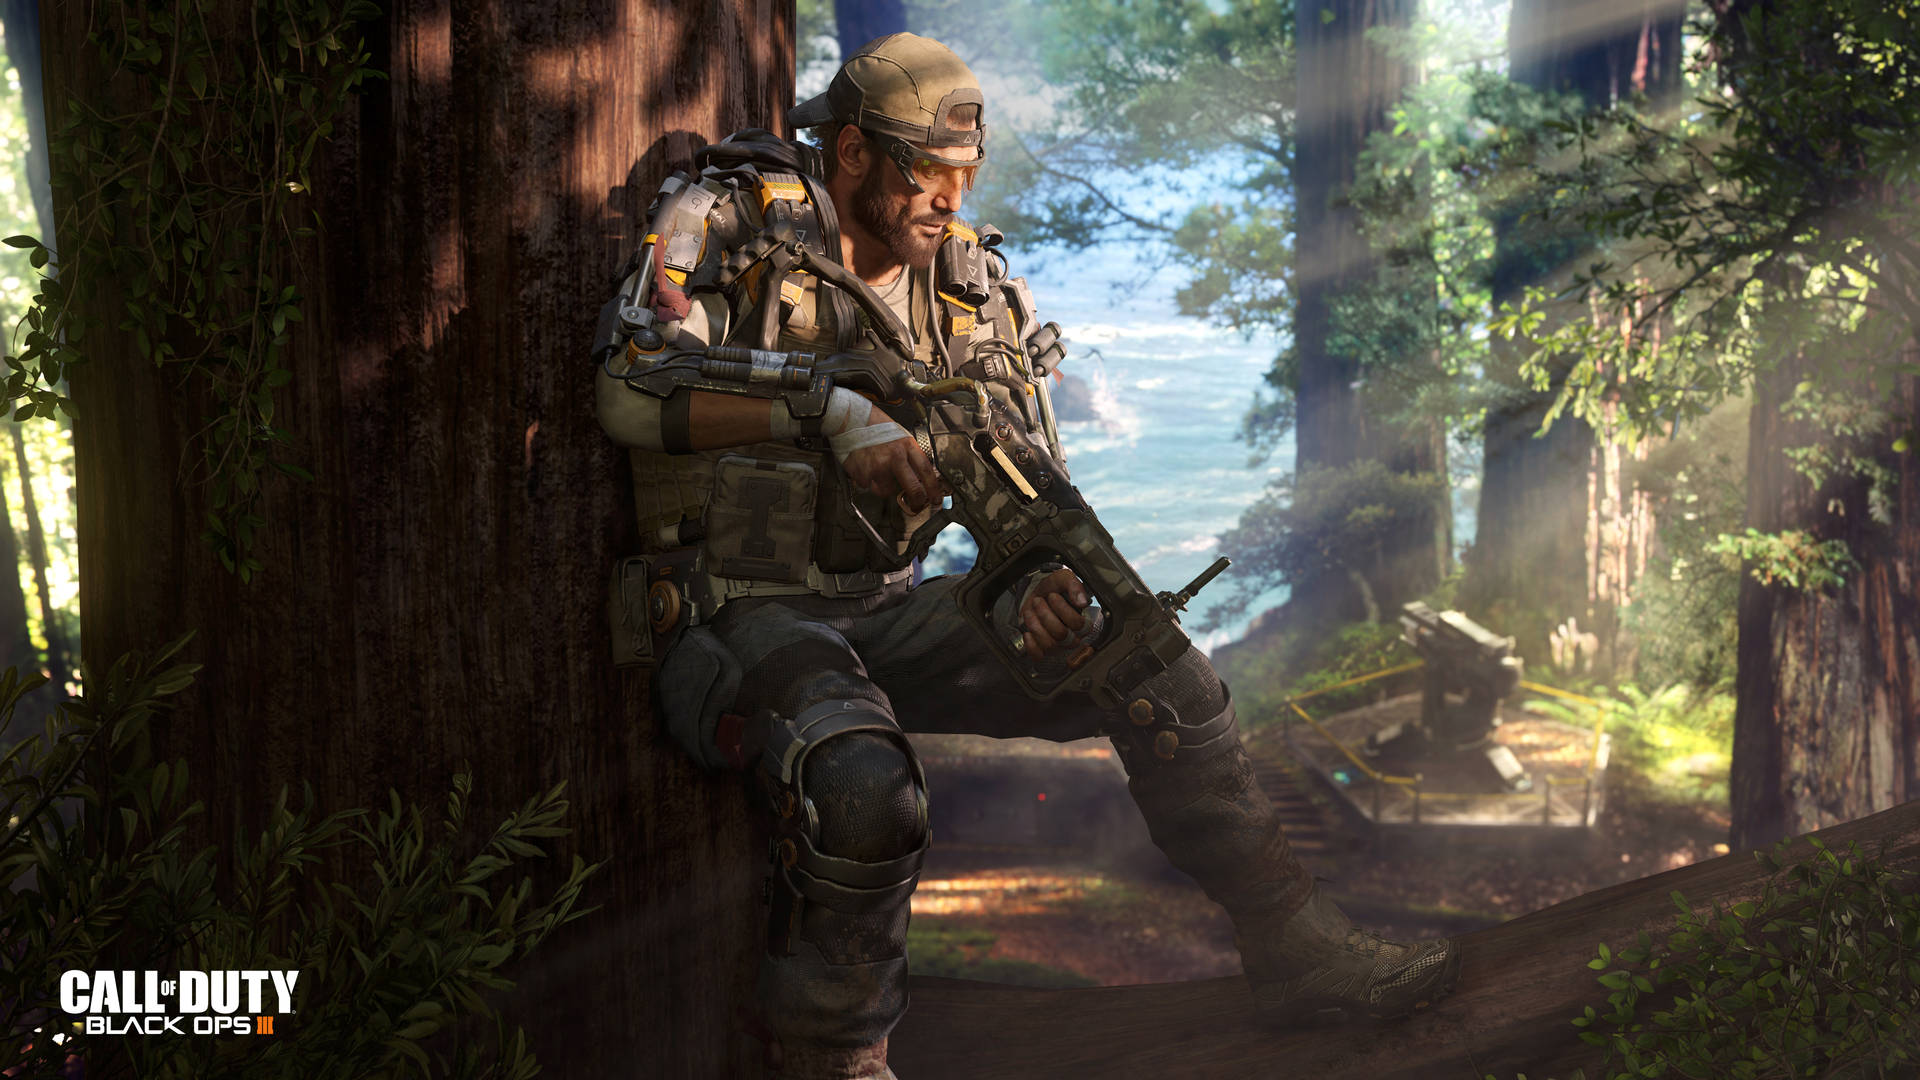 Udmanøvre, udfordre og overleve i Call of Duty Black Ops 3. Wallpaper